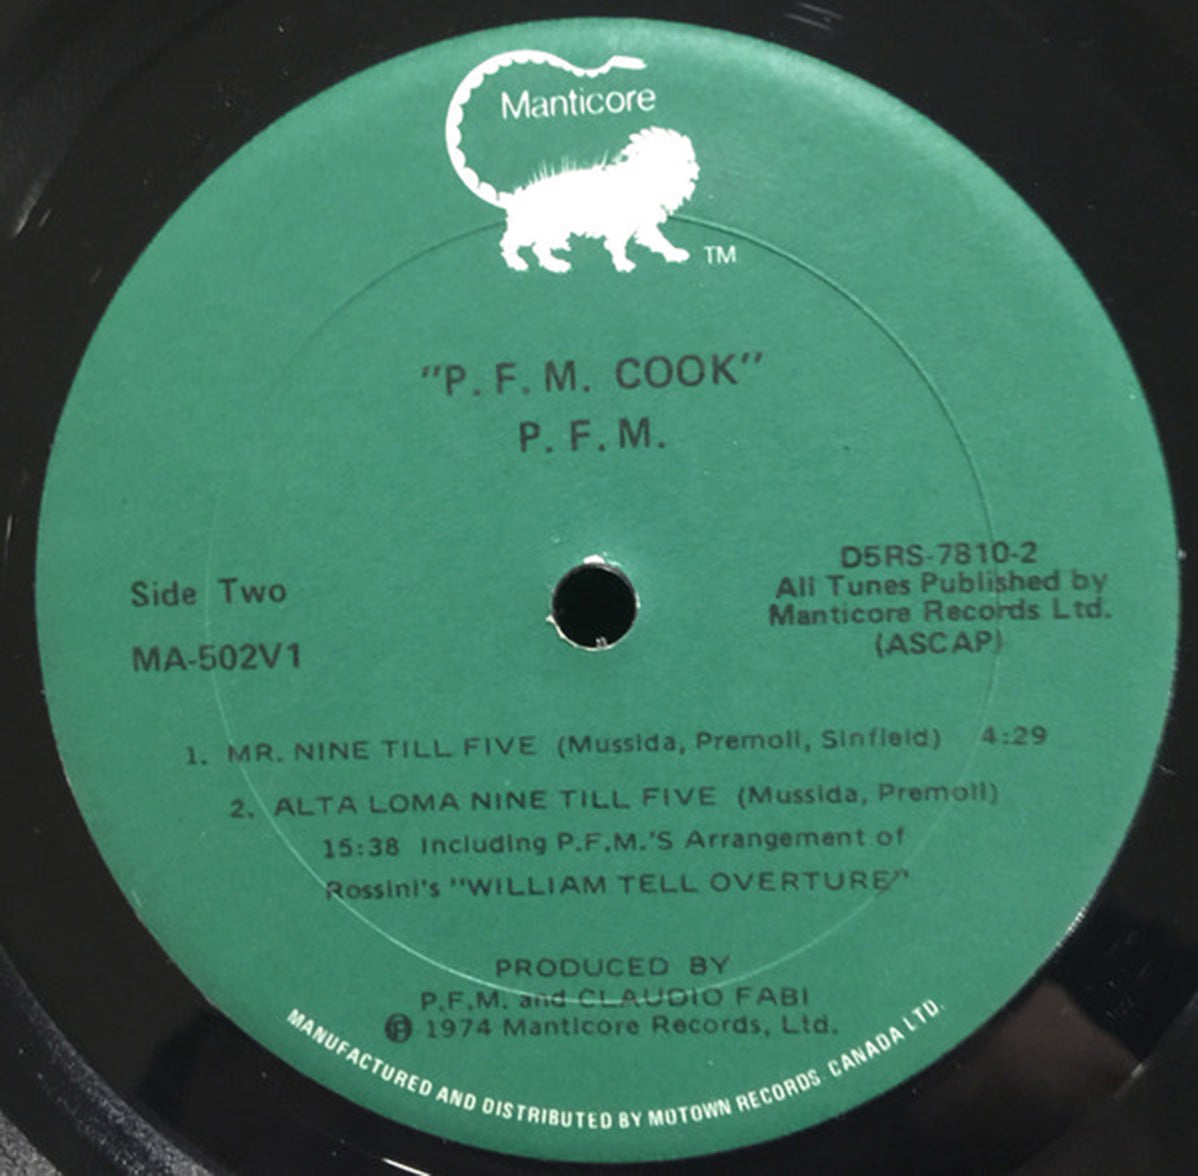 PFM - PFM Cook - 1975